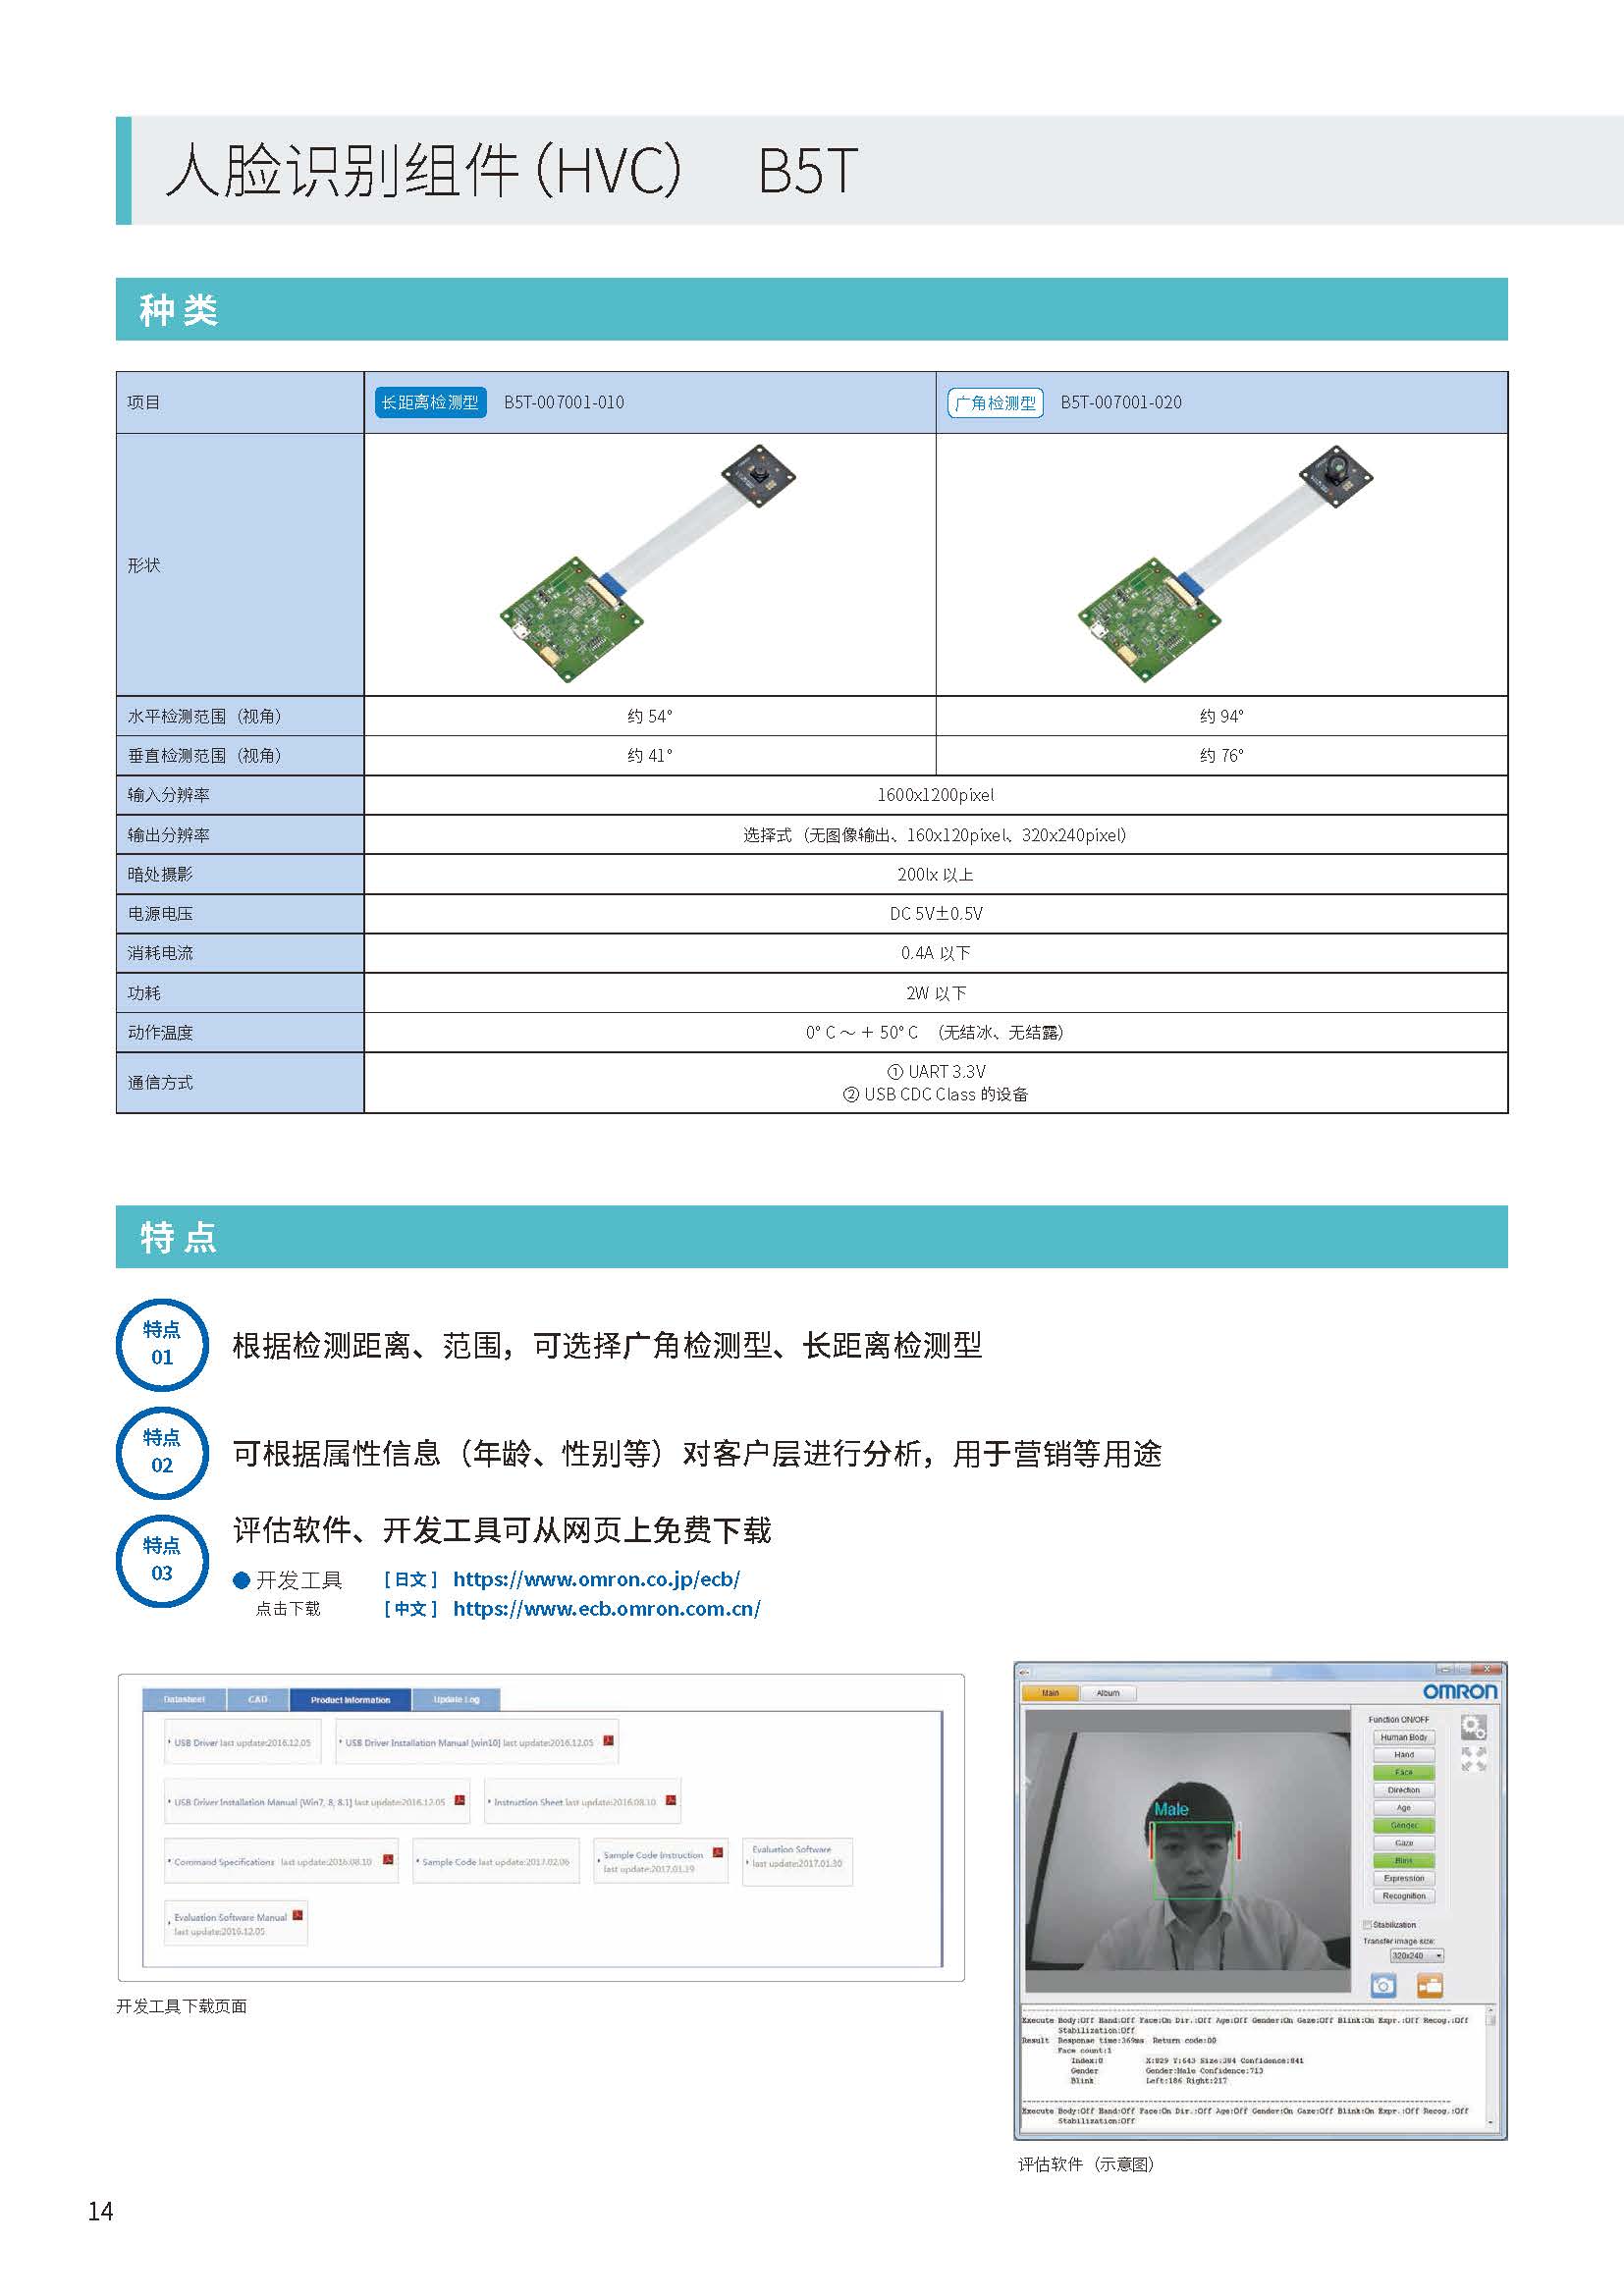 欧姆龙传感器选型指南CDSC-CN1-013_页面_14.jpg